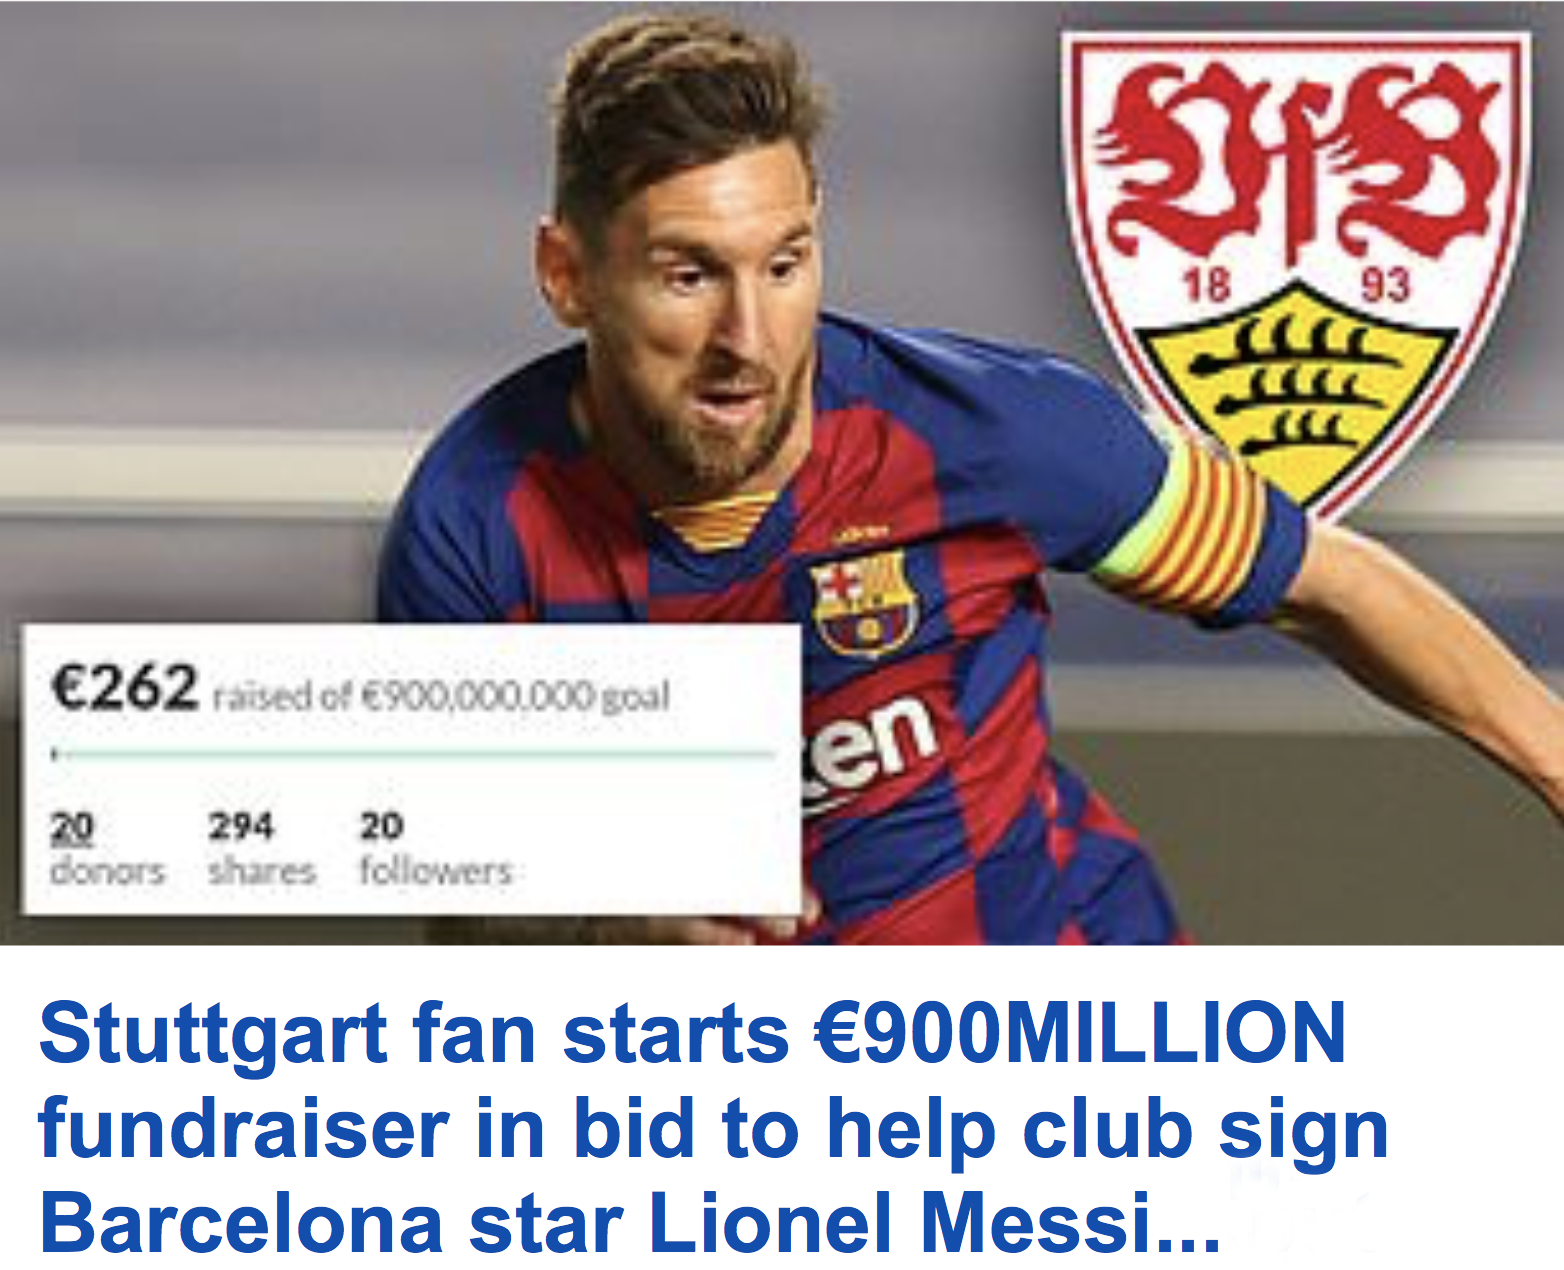 Bạn không muốn bỏ lỡ bức ảnh liên quan đến quỹ kiếm tiền mua Messi đang được quảng bá rộng rãi? Bức ảnh này không chỉ đem lại tiếng cười mà còn làm bạn cảm thấy mạnh mẽ và quyết tâm để đạt được mục tiêu của mình.